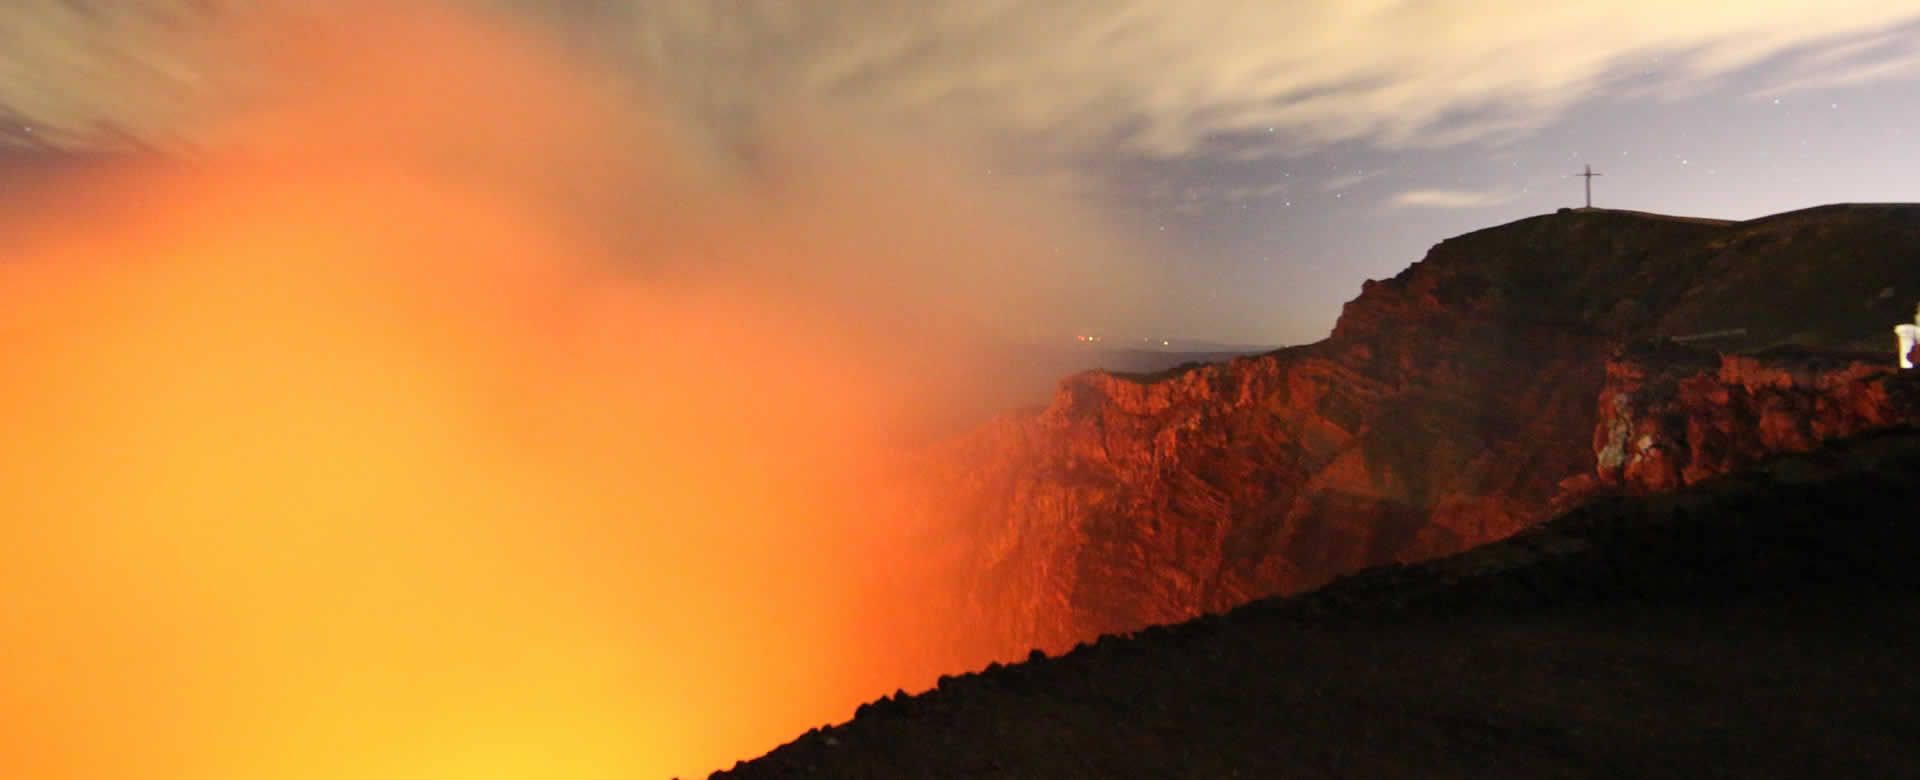 National Geografic realiza reportaje sobre los atributos del Volcán Masaya